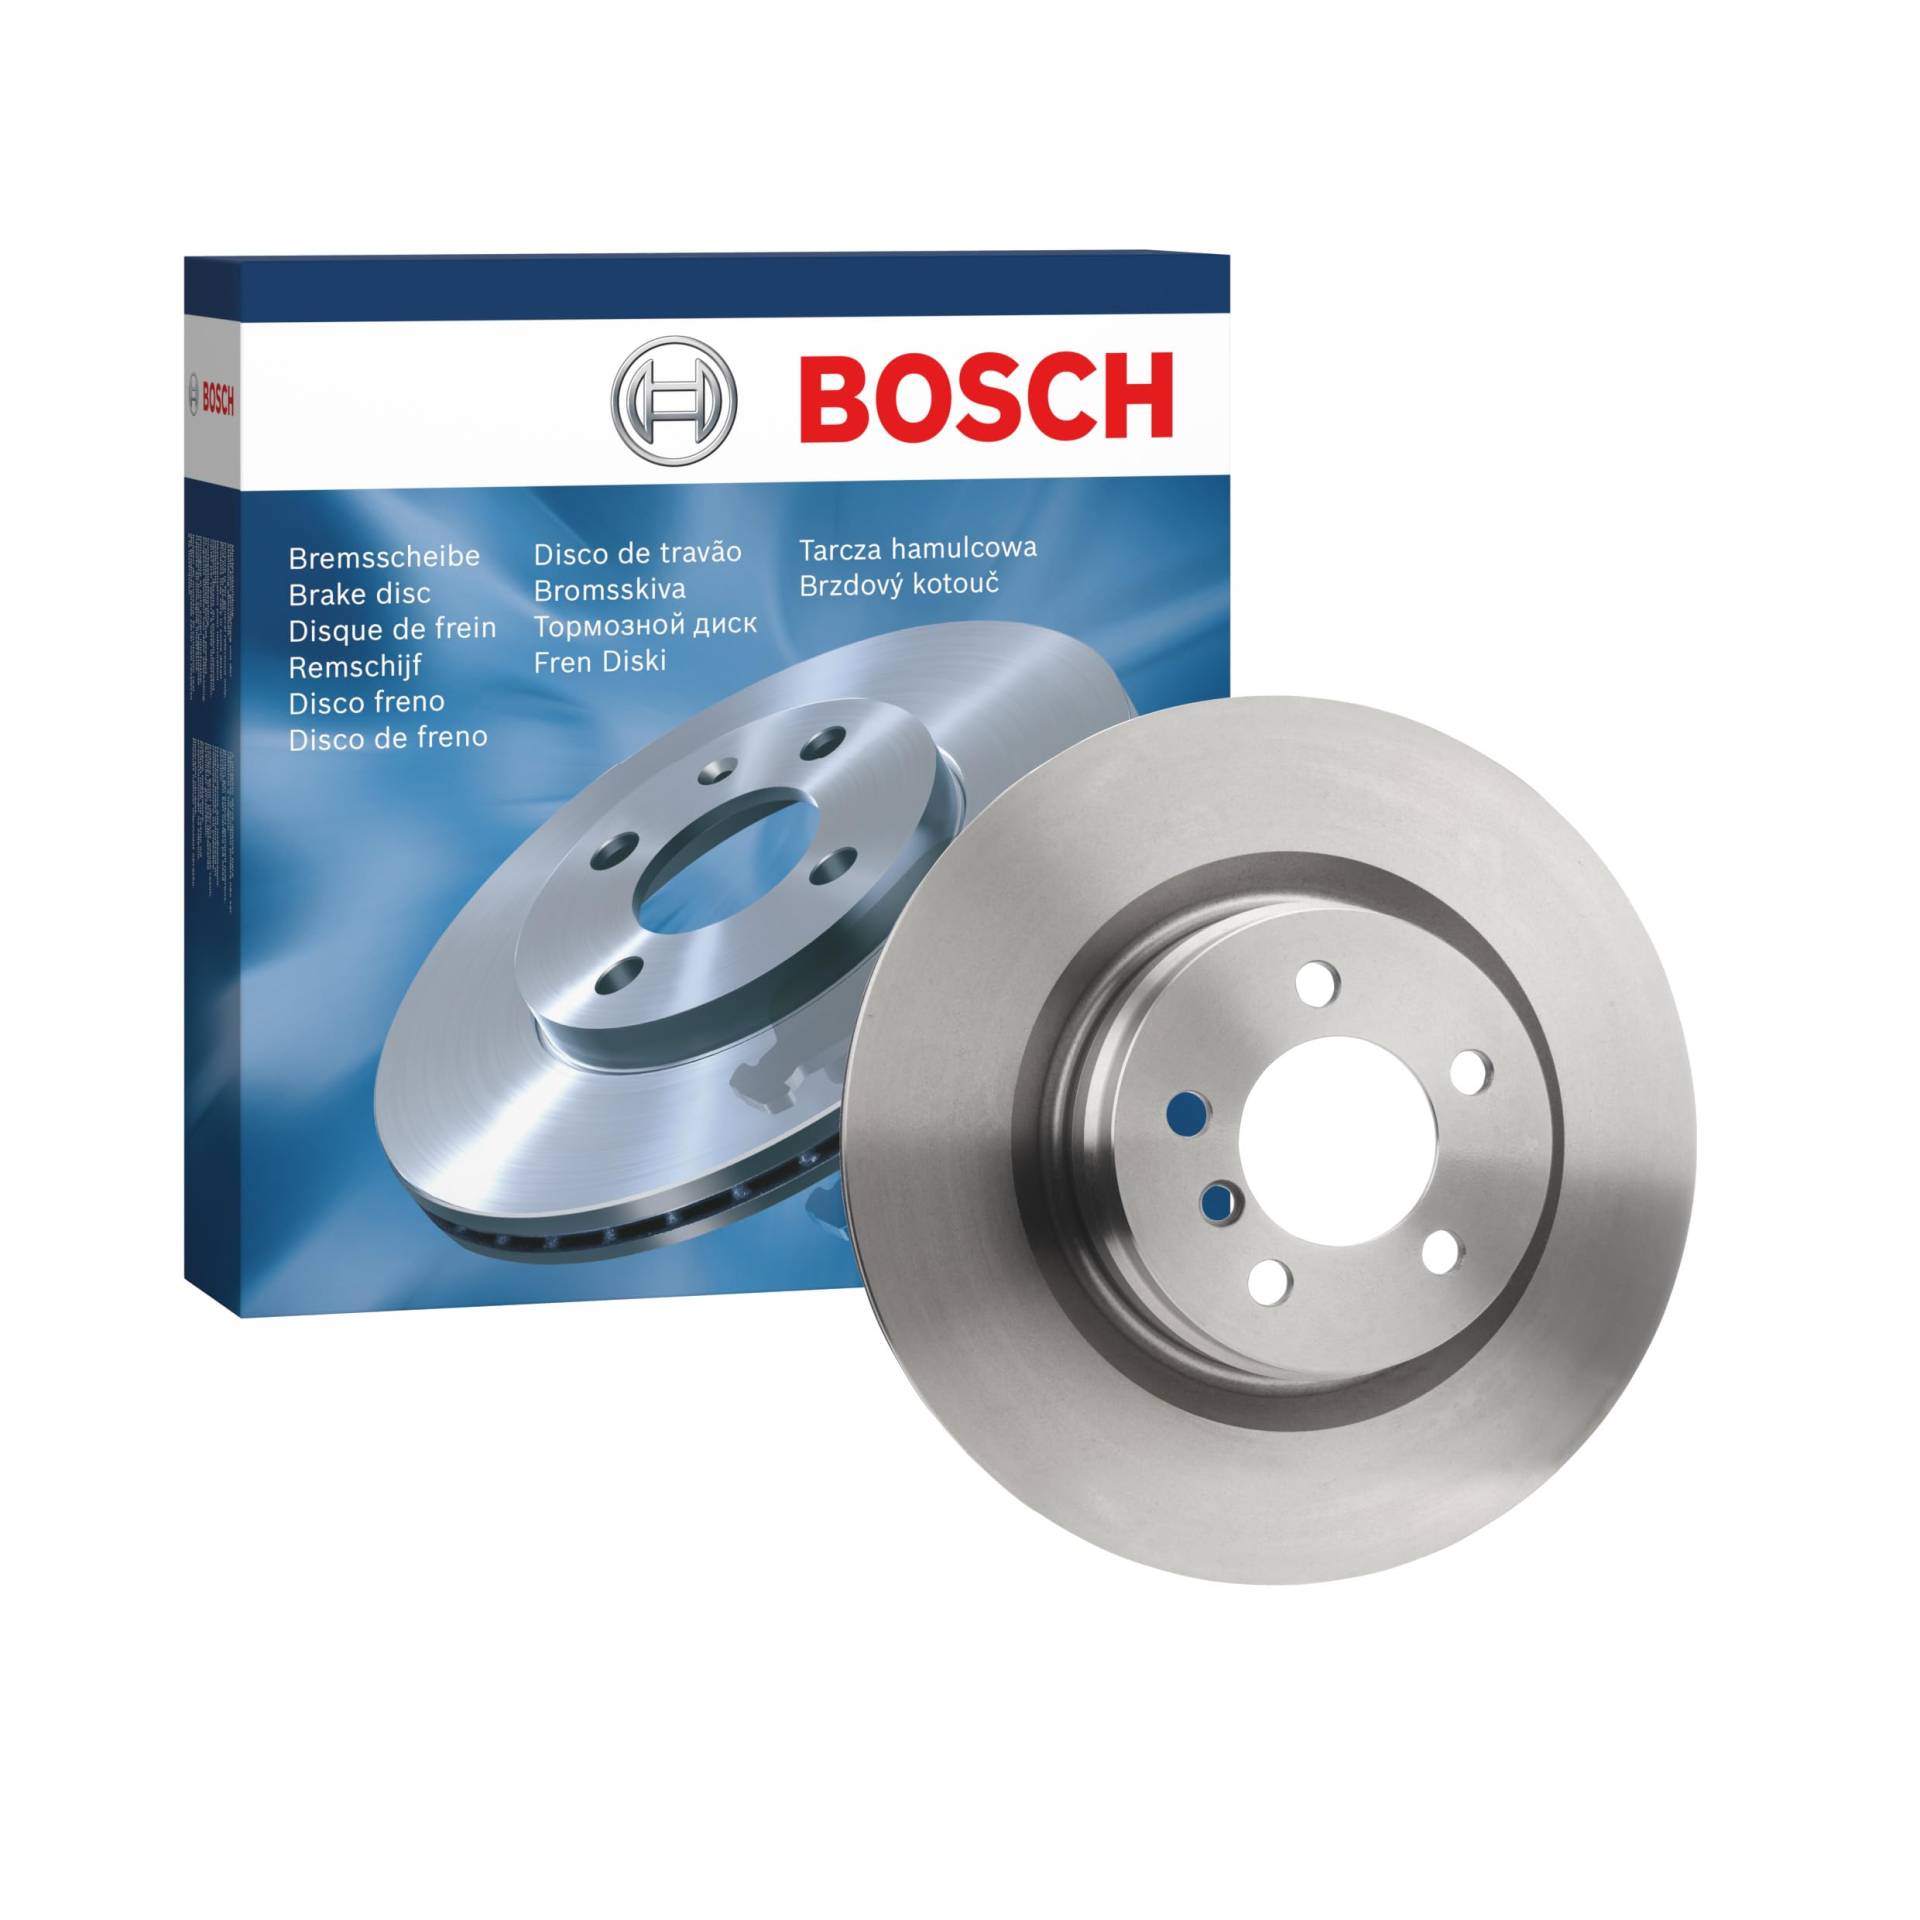 Bosch BD1401 Bremsscheiben - Vorderachse - ECE-R90 Zertifizierung - eine Bremsscheibe von Bosch Automotive